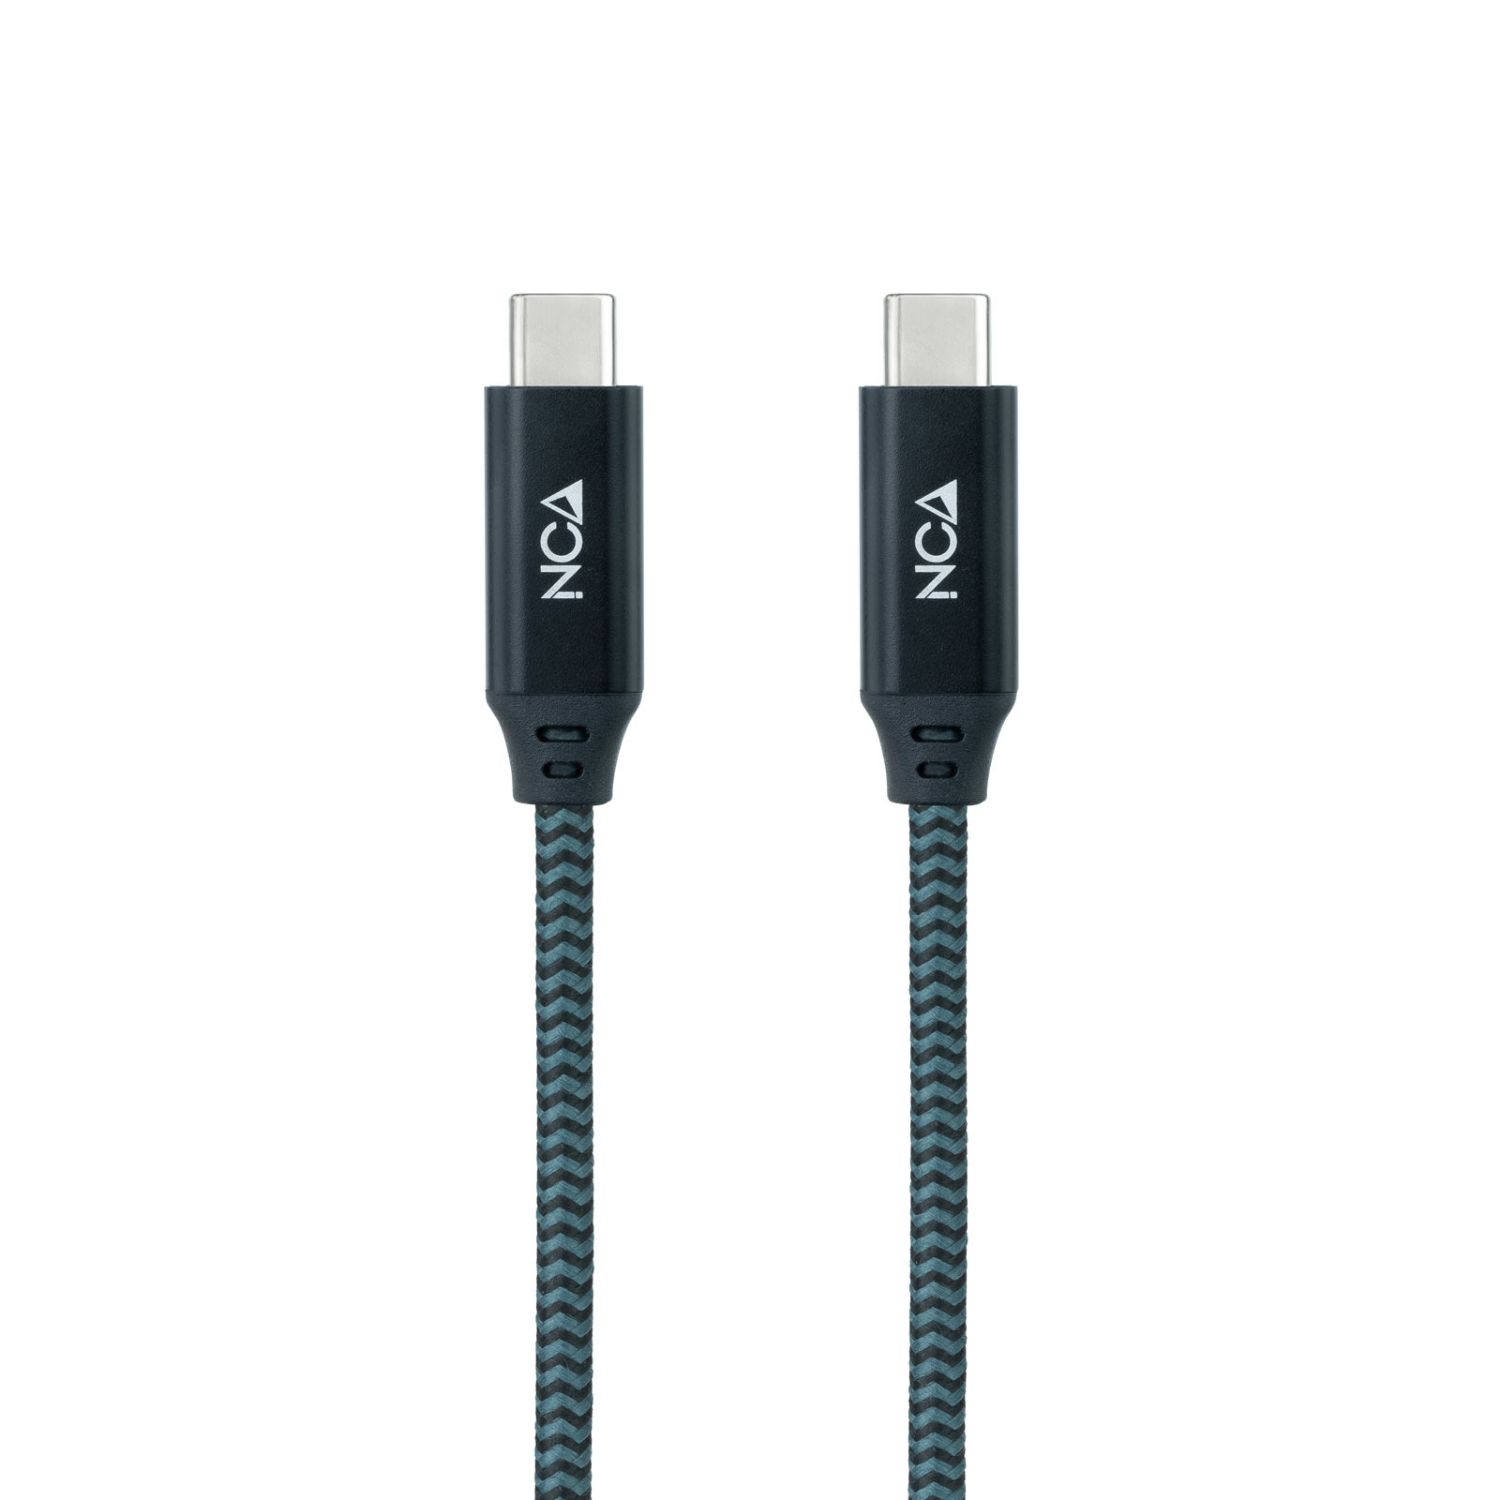 10.01.4300-COMB - Nanocable USB-C a USB-C 50cm trenzado de algodon, Gris y Negro (10.01.4300-COMB)